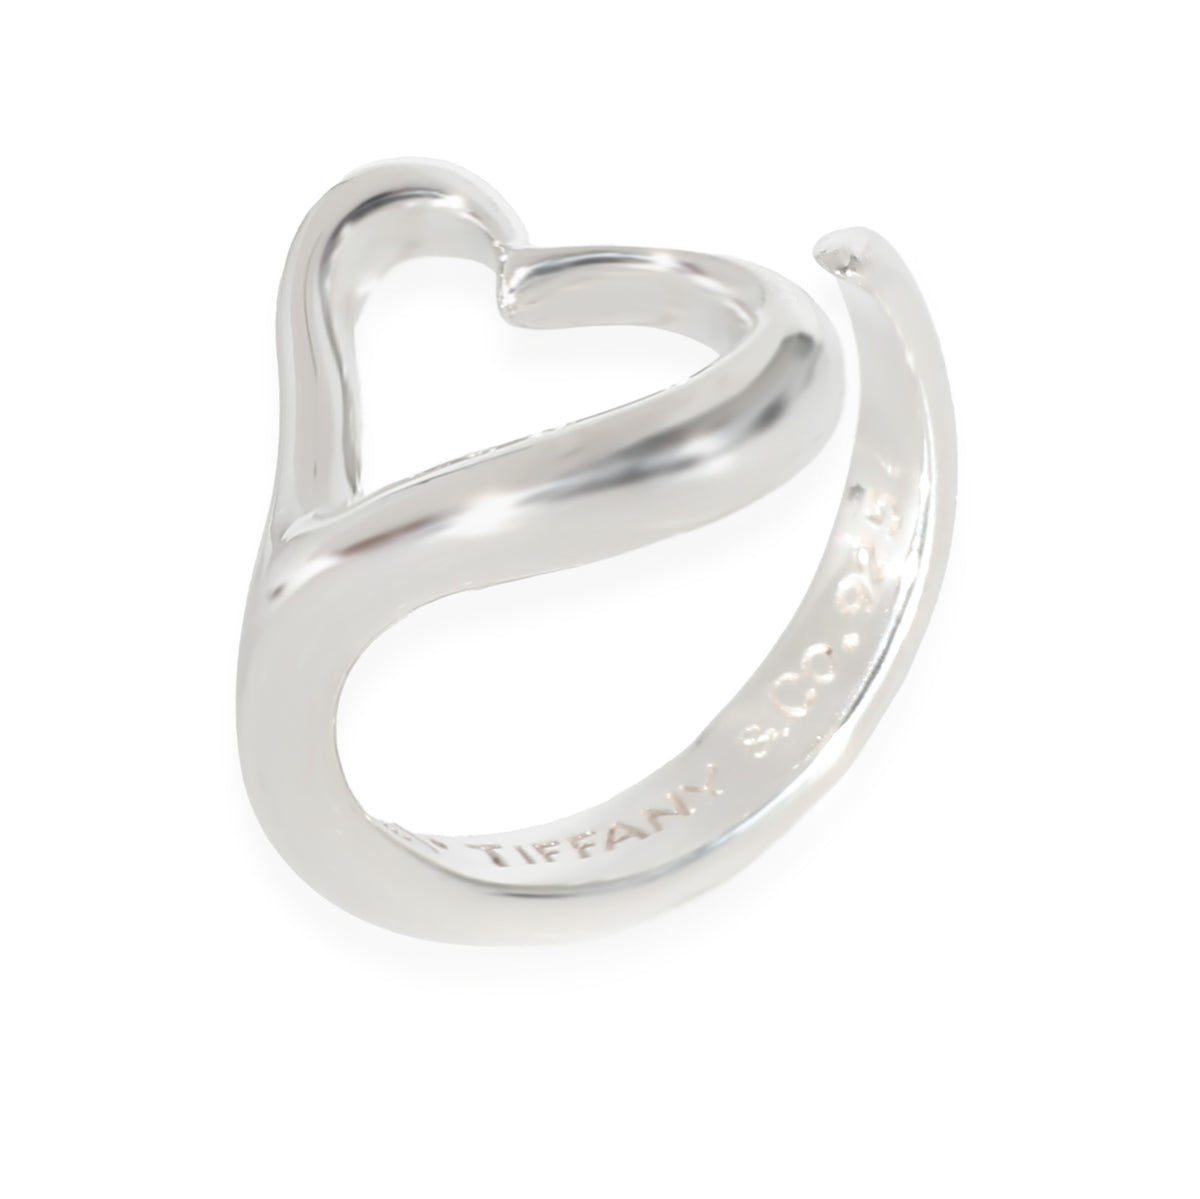 Elsa Peretti Open Heart Ring in Sterling Silver